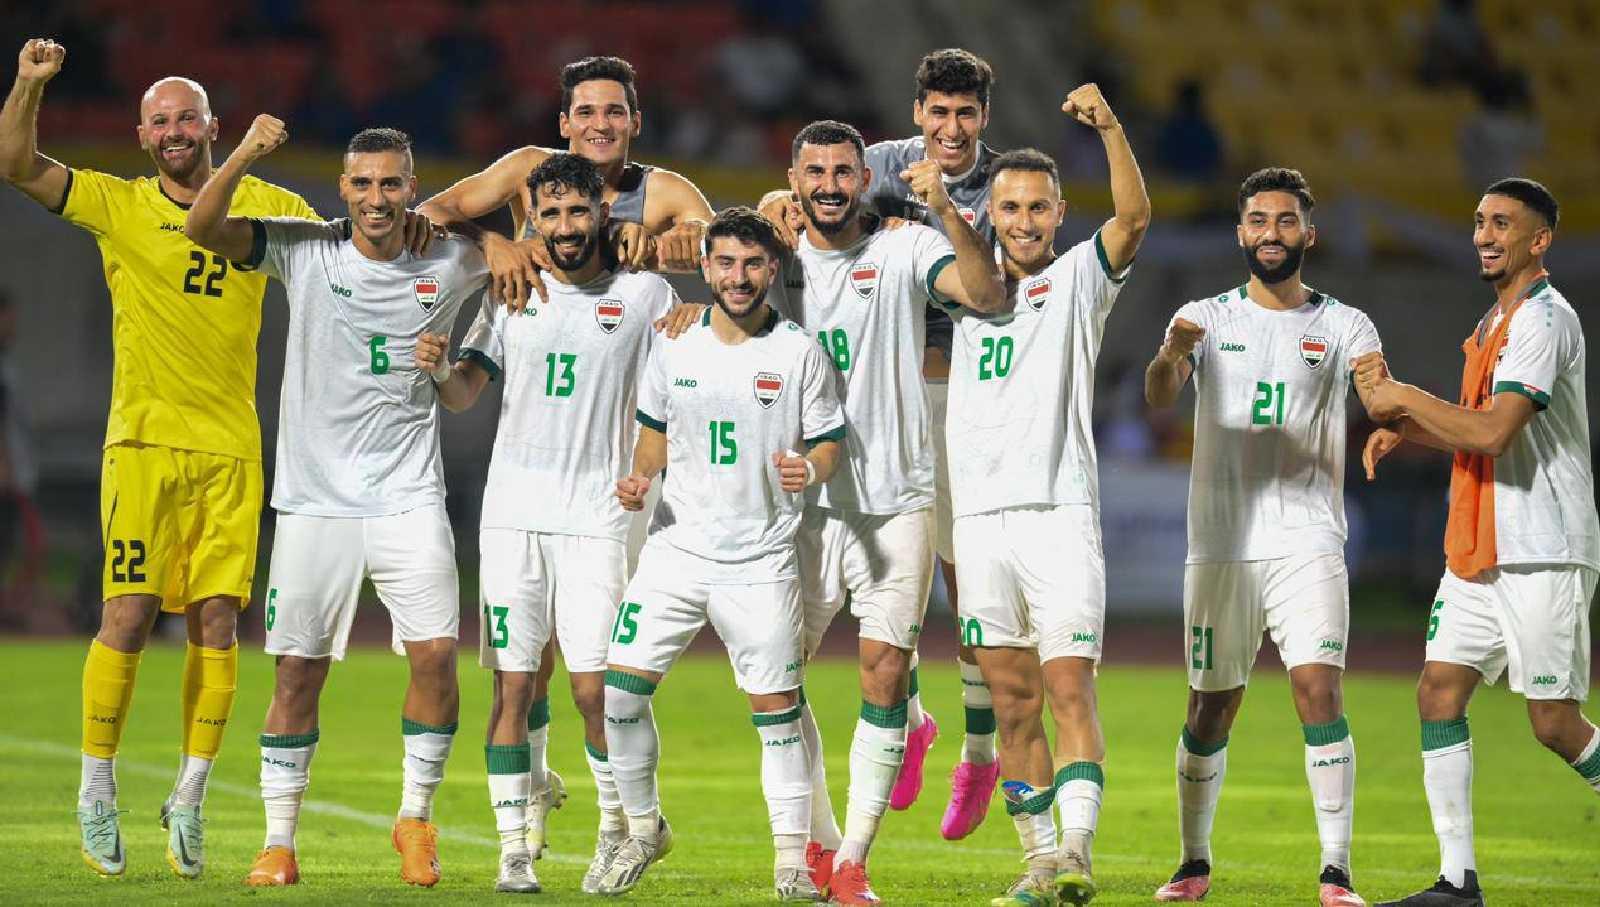 Bedah Kualitas Irak, Calon Lawan Timnas Indonesia di Piala Dunia 2026 -  INDOSPORT